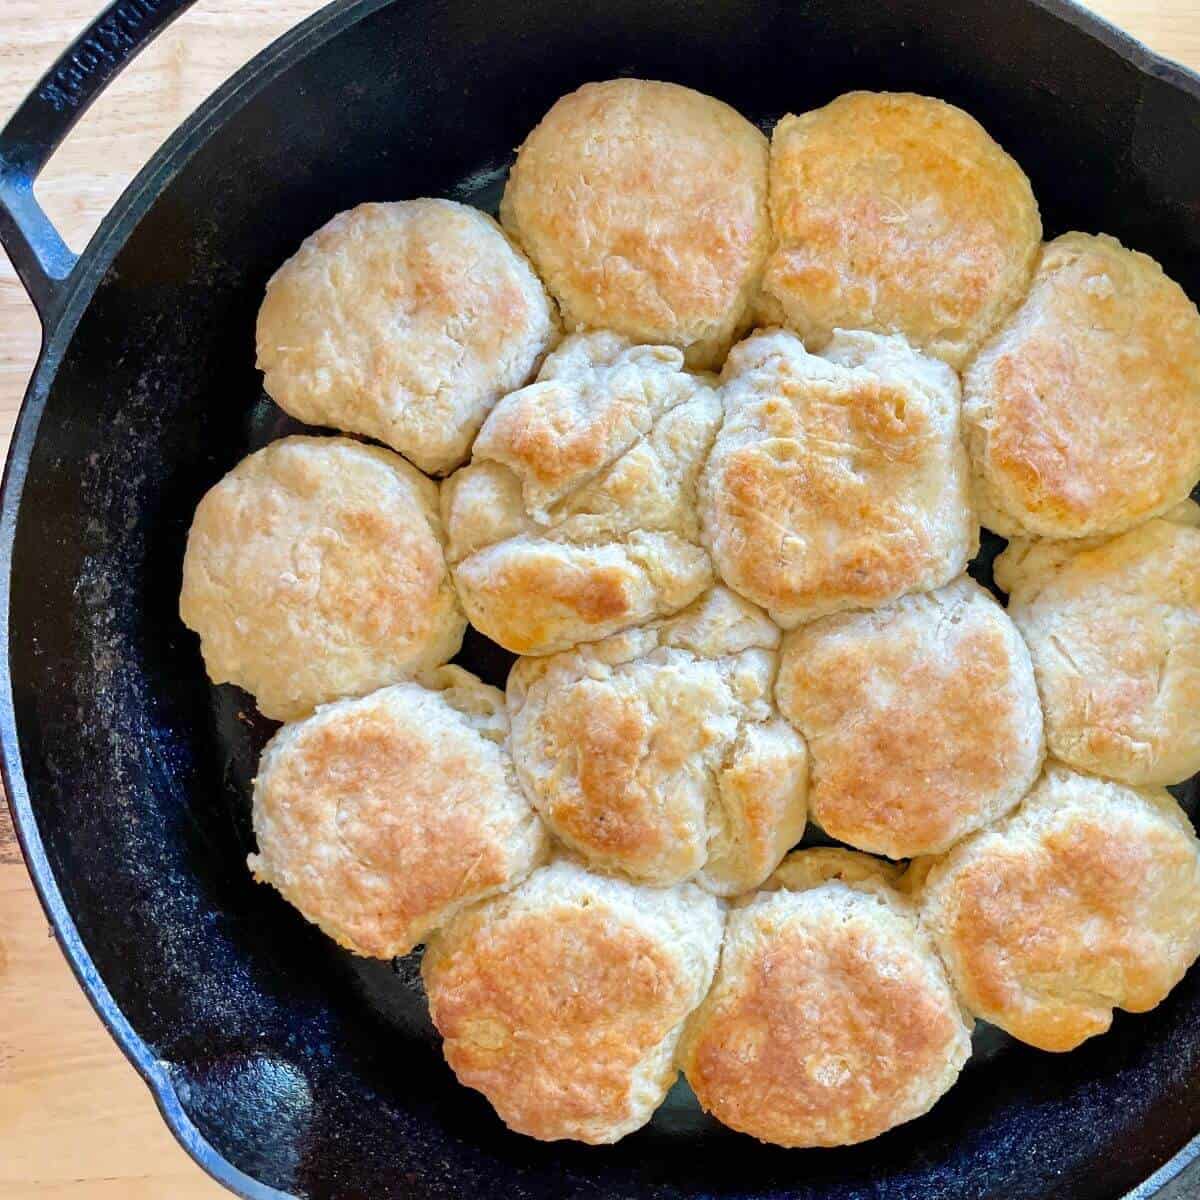 Best biscuit pan : r/castiron